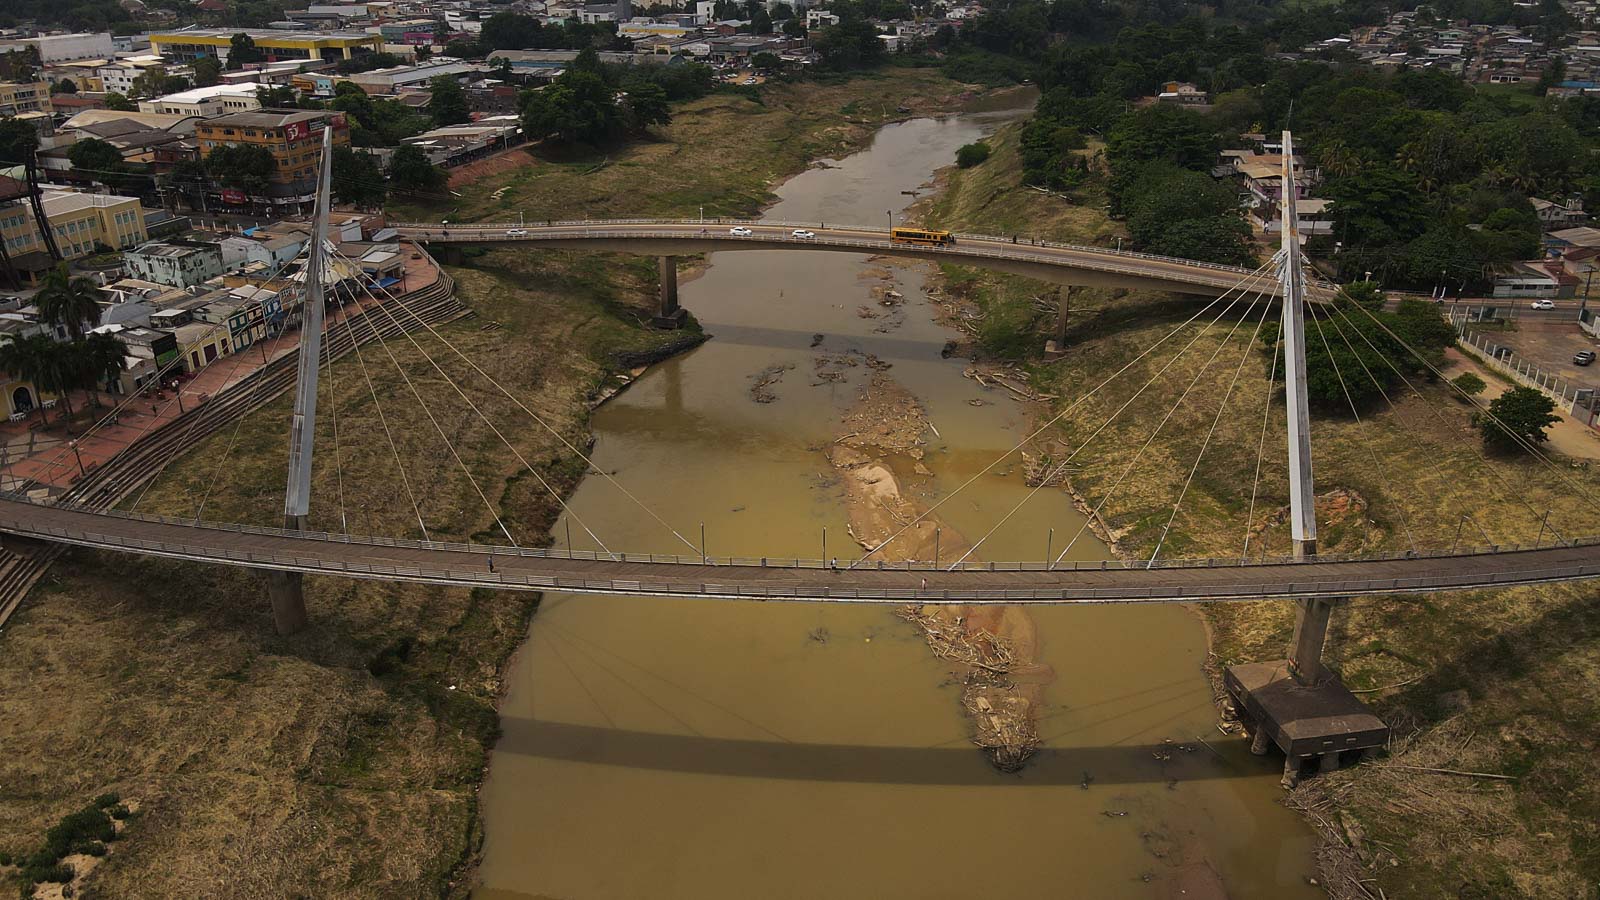 Emergência climática: estados da Amazônia encontram dificuldades diante de seca histórica